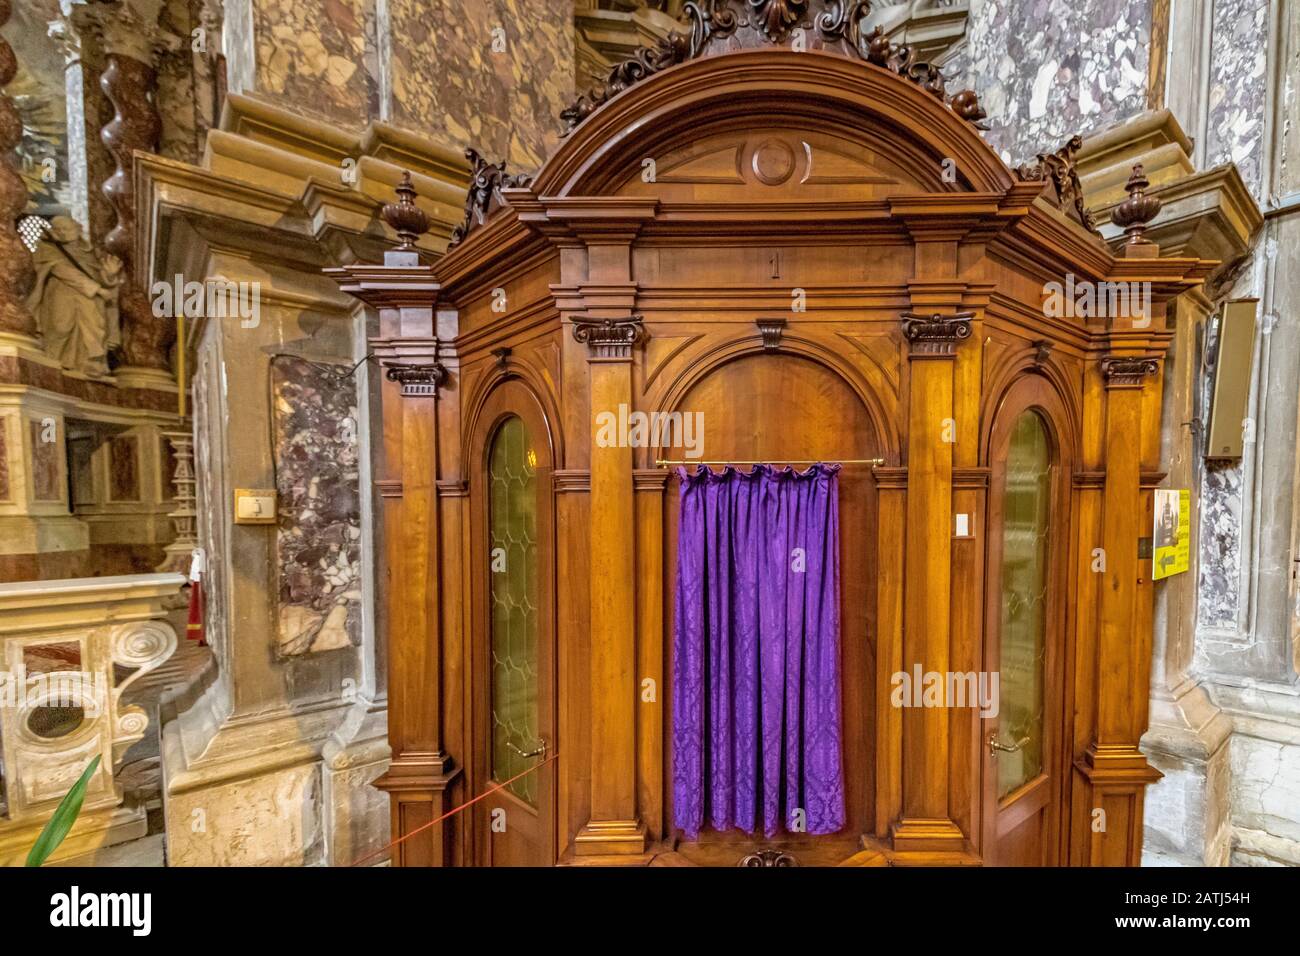 A confessional booth or confession box and the interior of  Santa Maria di Nazareth Church ,Venice,Italy Stock Photo